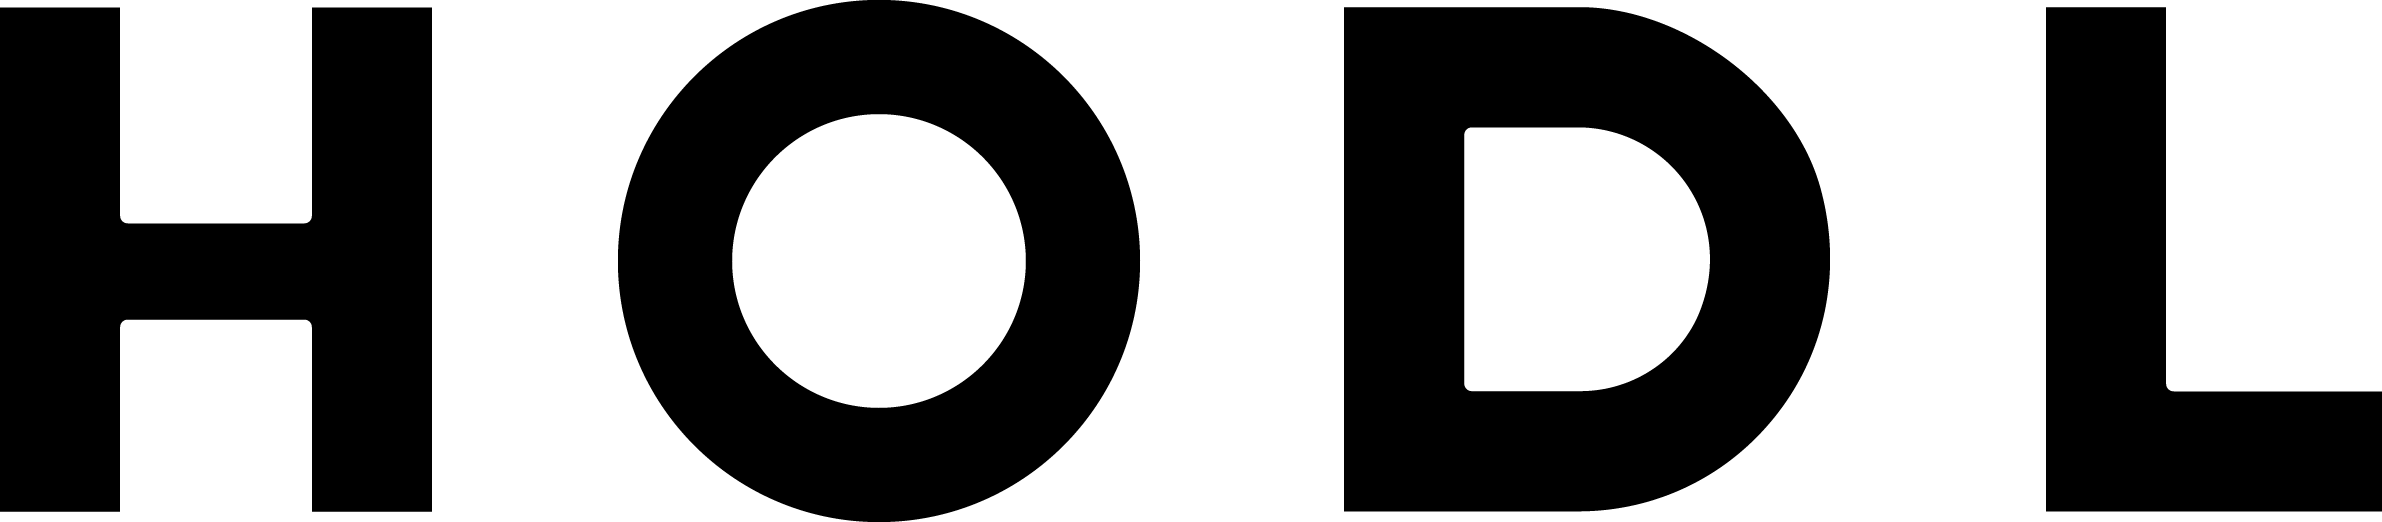 Hodl logo